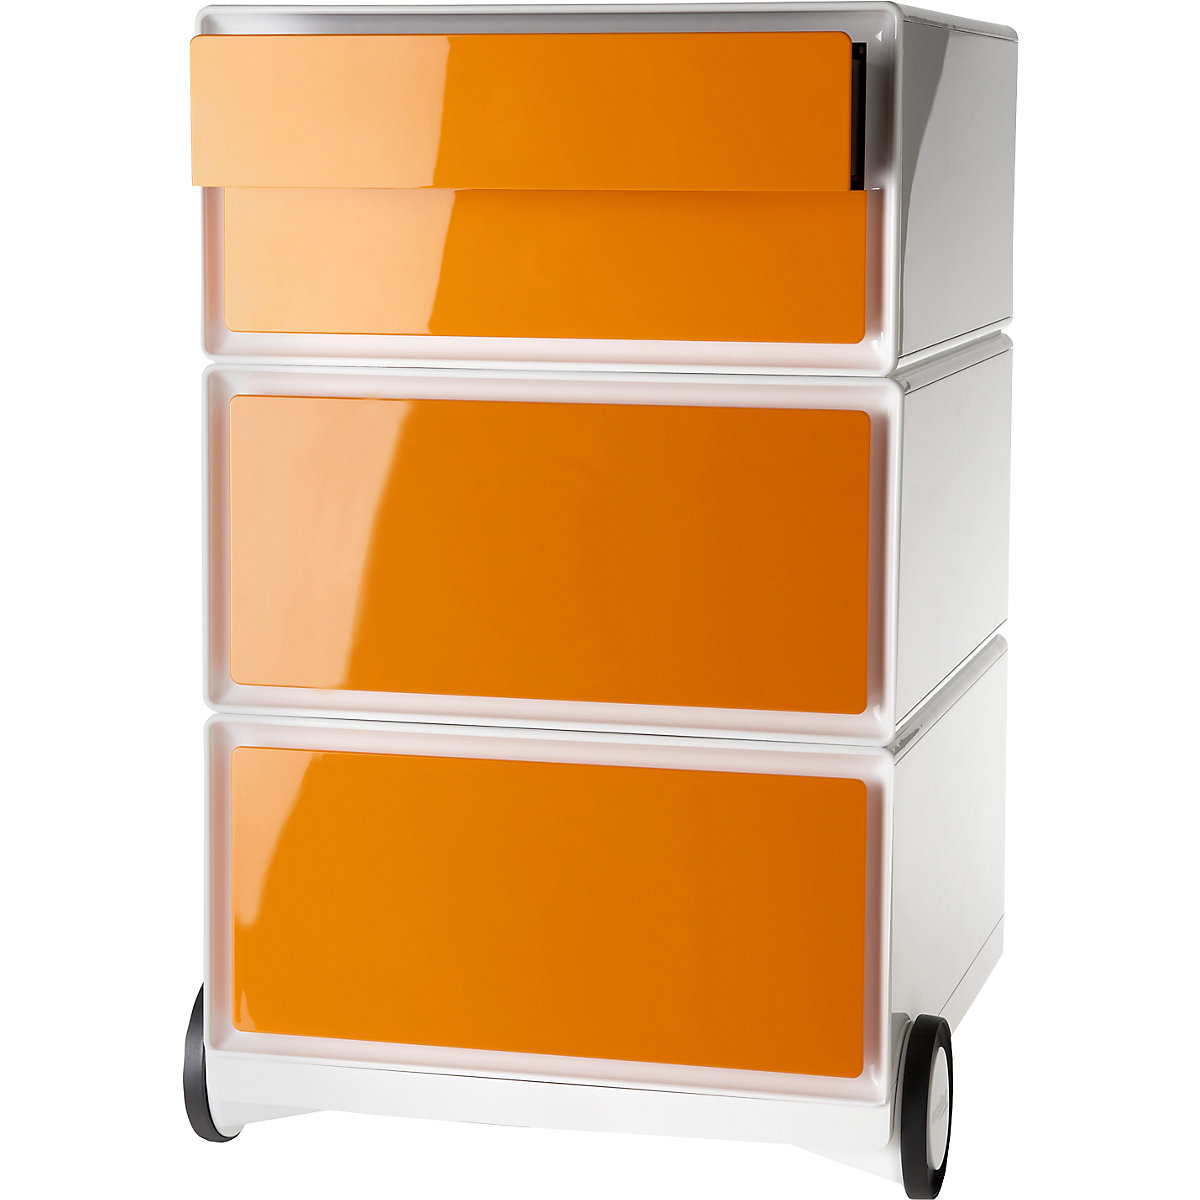 Paperflow – easyBox® mobile pedestal, 2 drawers, 2 flat drawers, white / orange